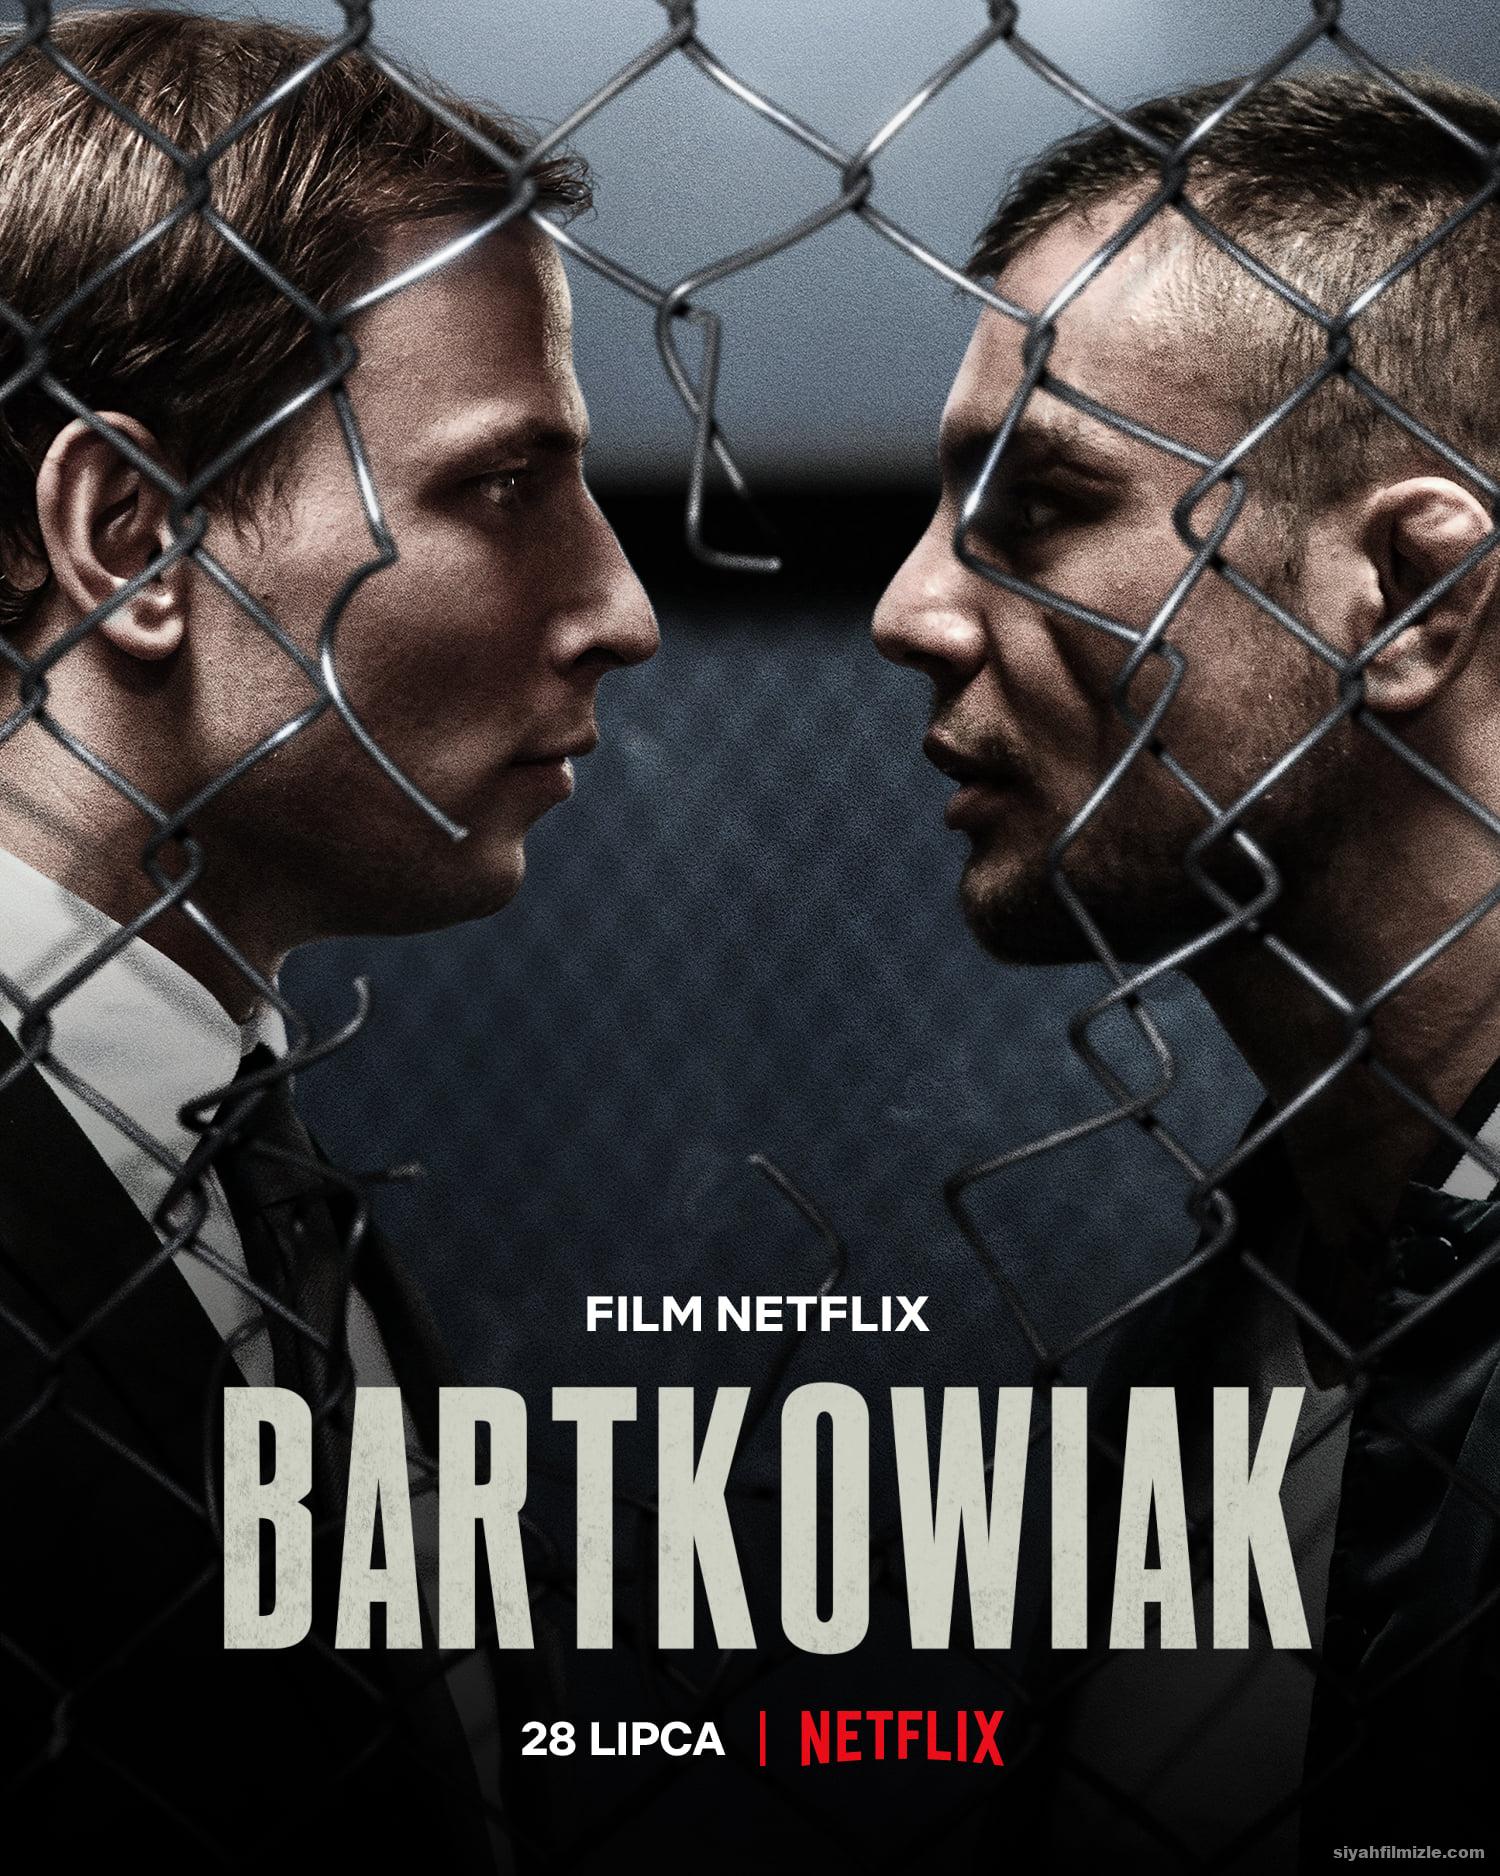 Bartkowiak 2021 Filmi Türkçe Dublaj Altyazılı Full izle